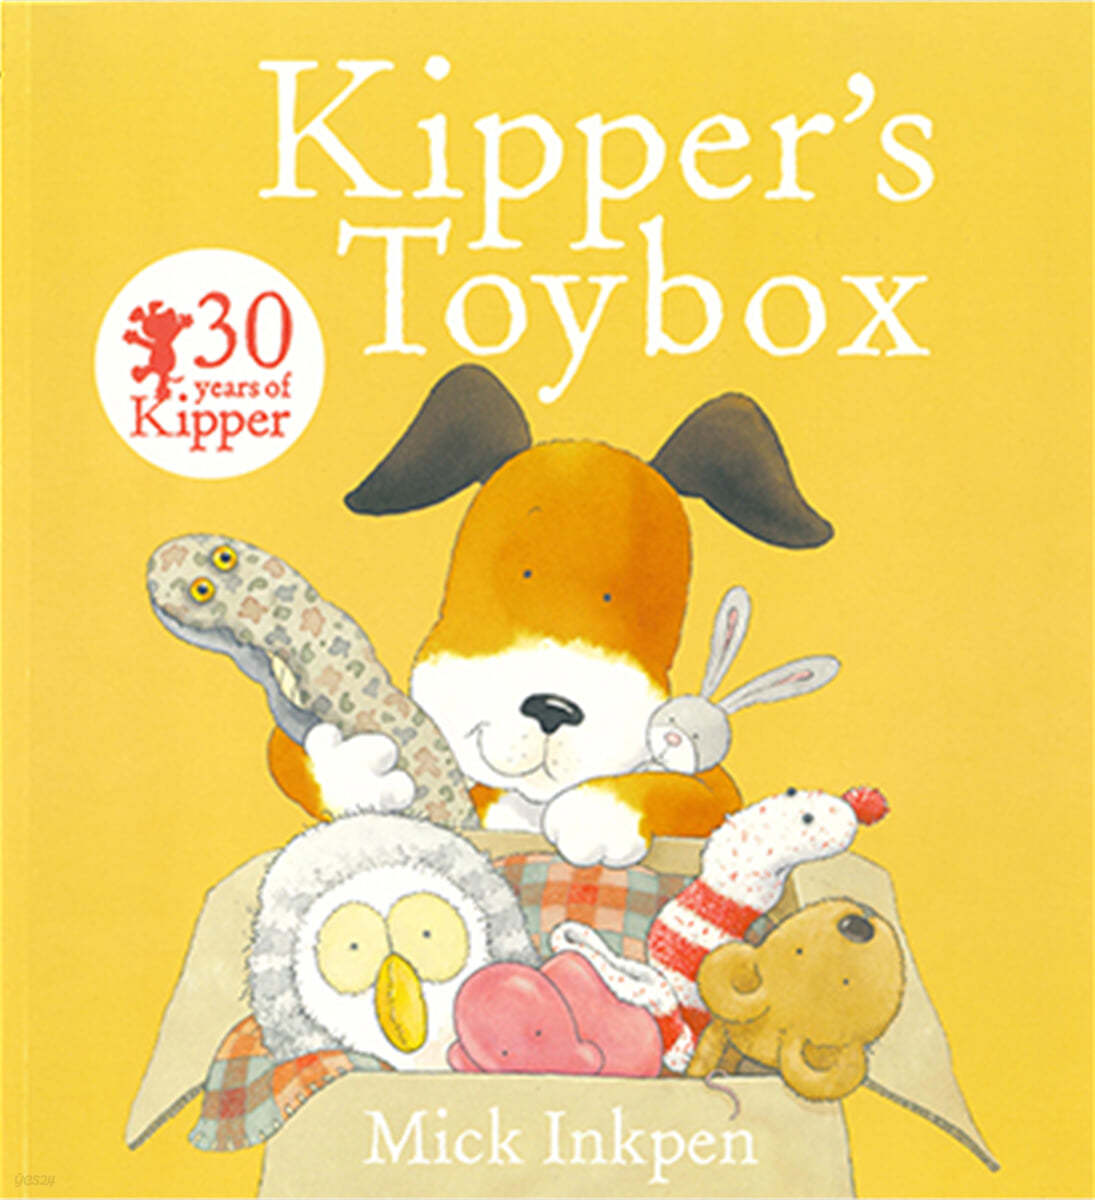 Kipper's toybox